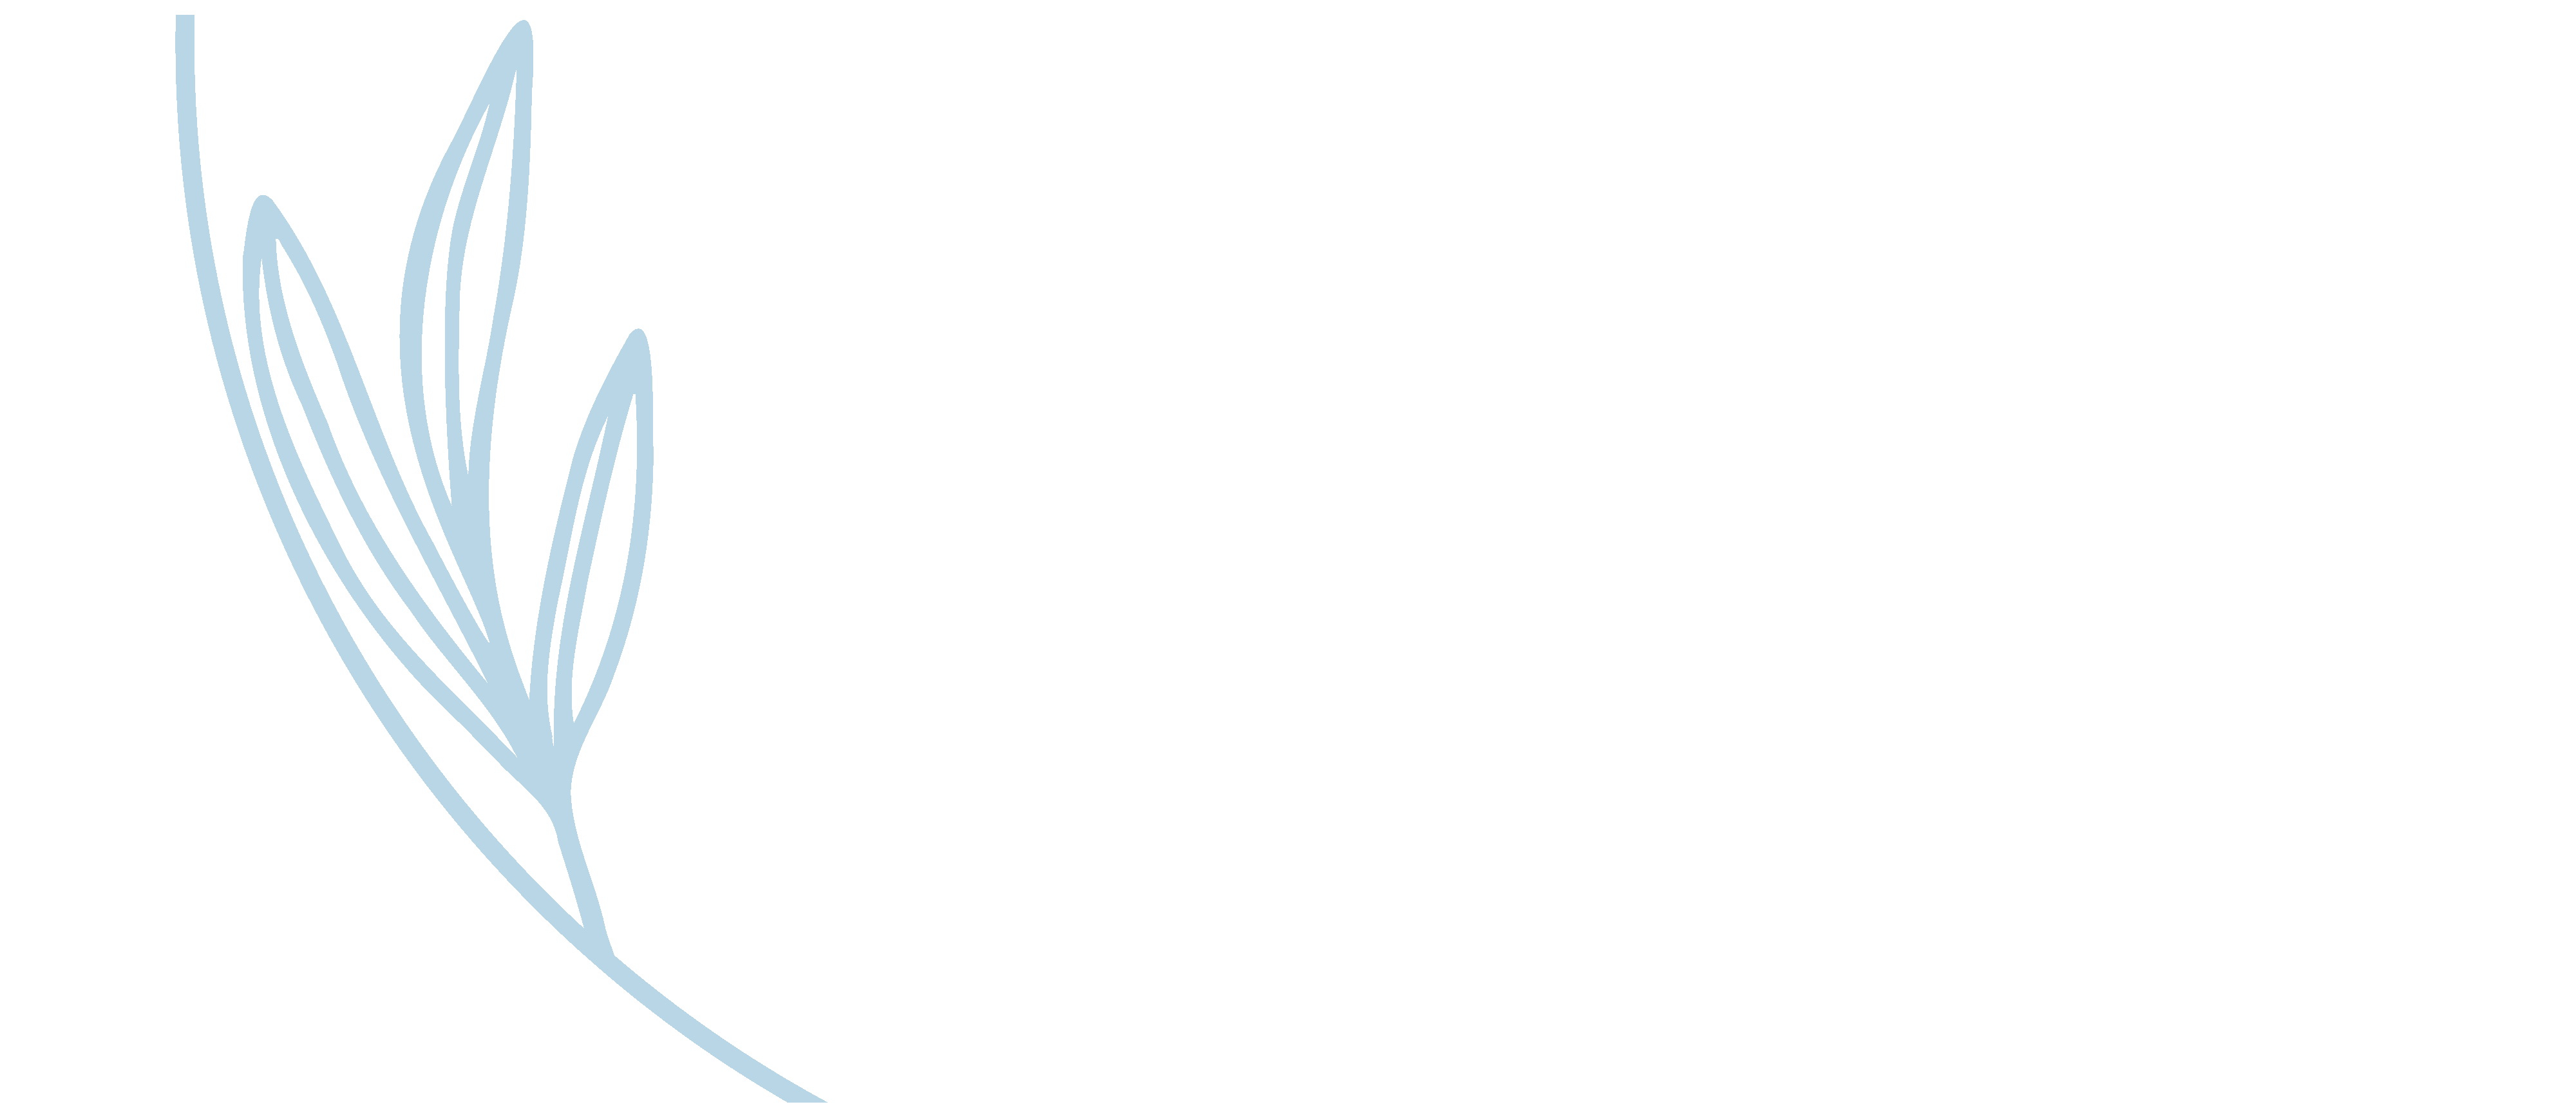 SYLF care